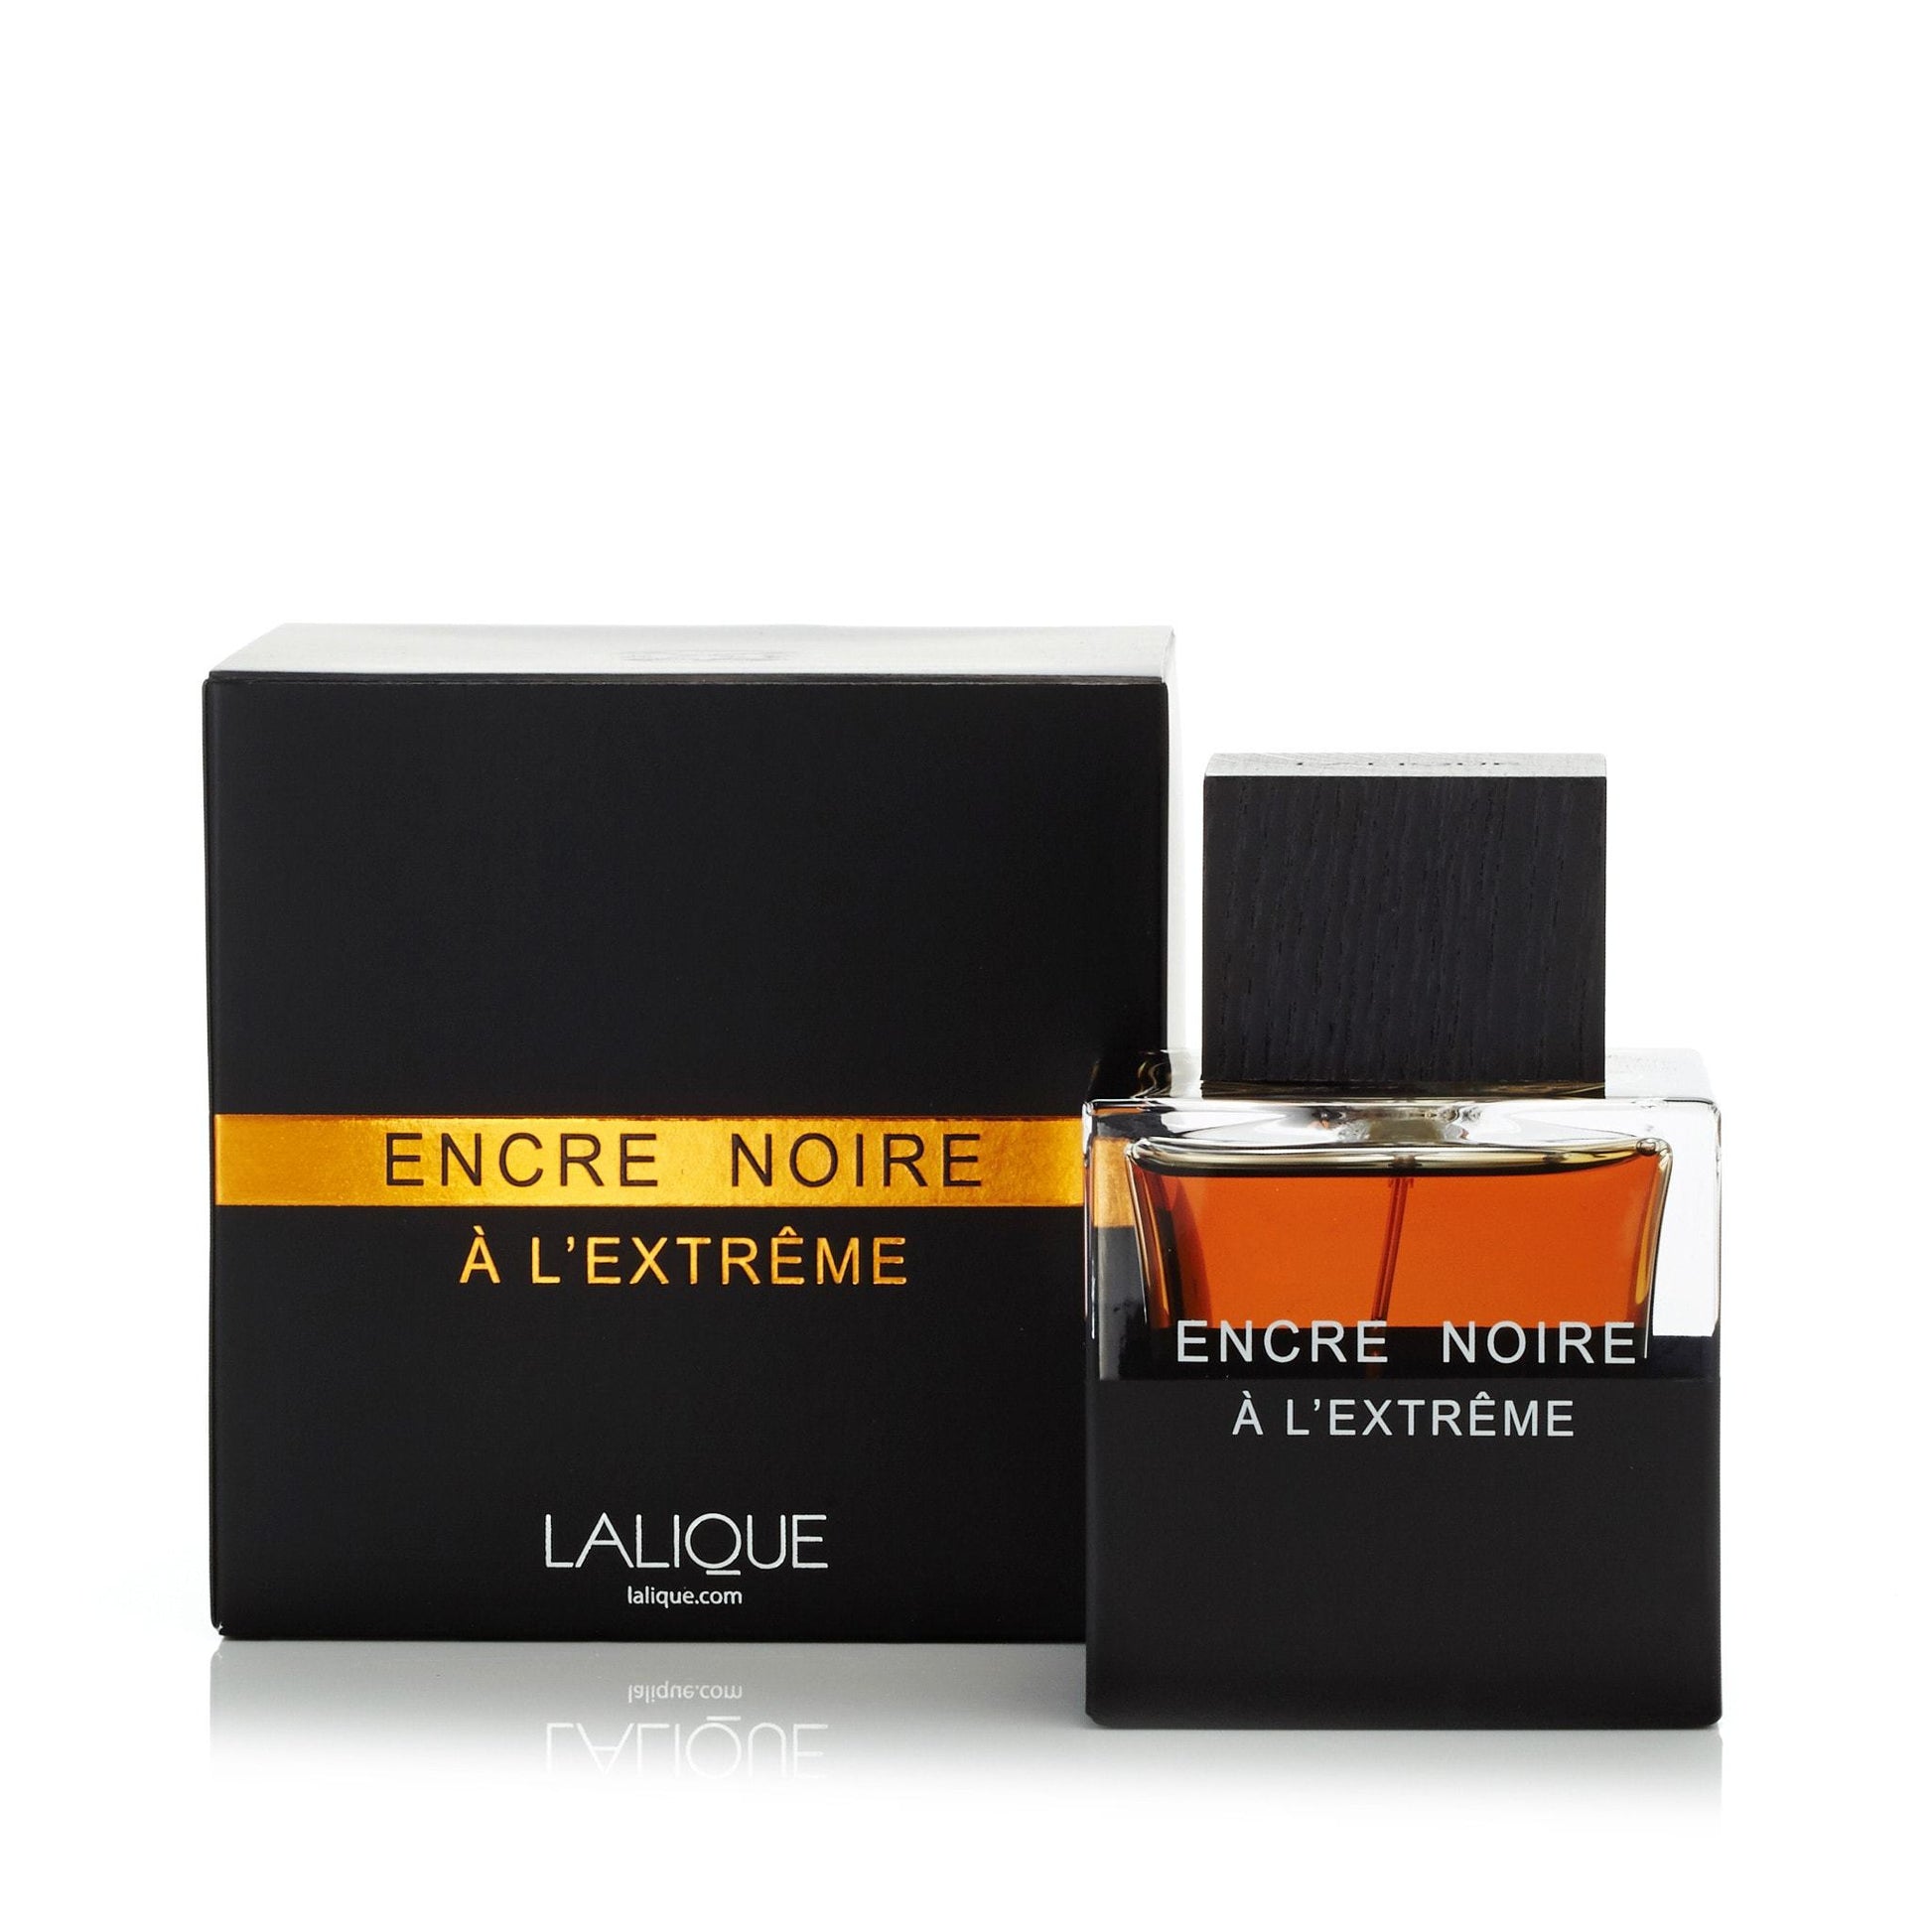 Encre Noire A L'Extreme Eau de Parfum Spray for Men by Lalique, Product image 1